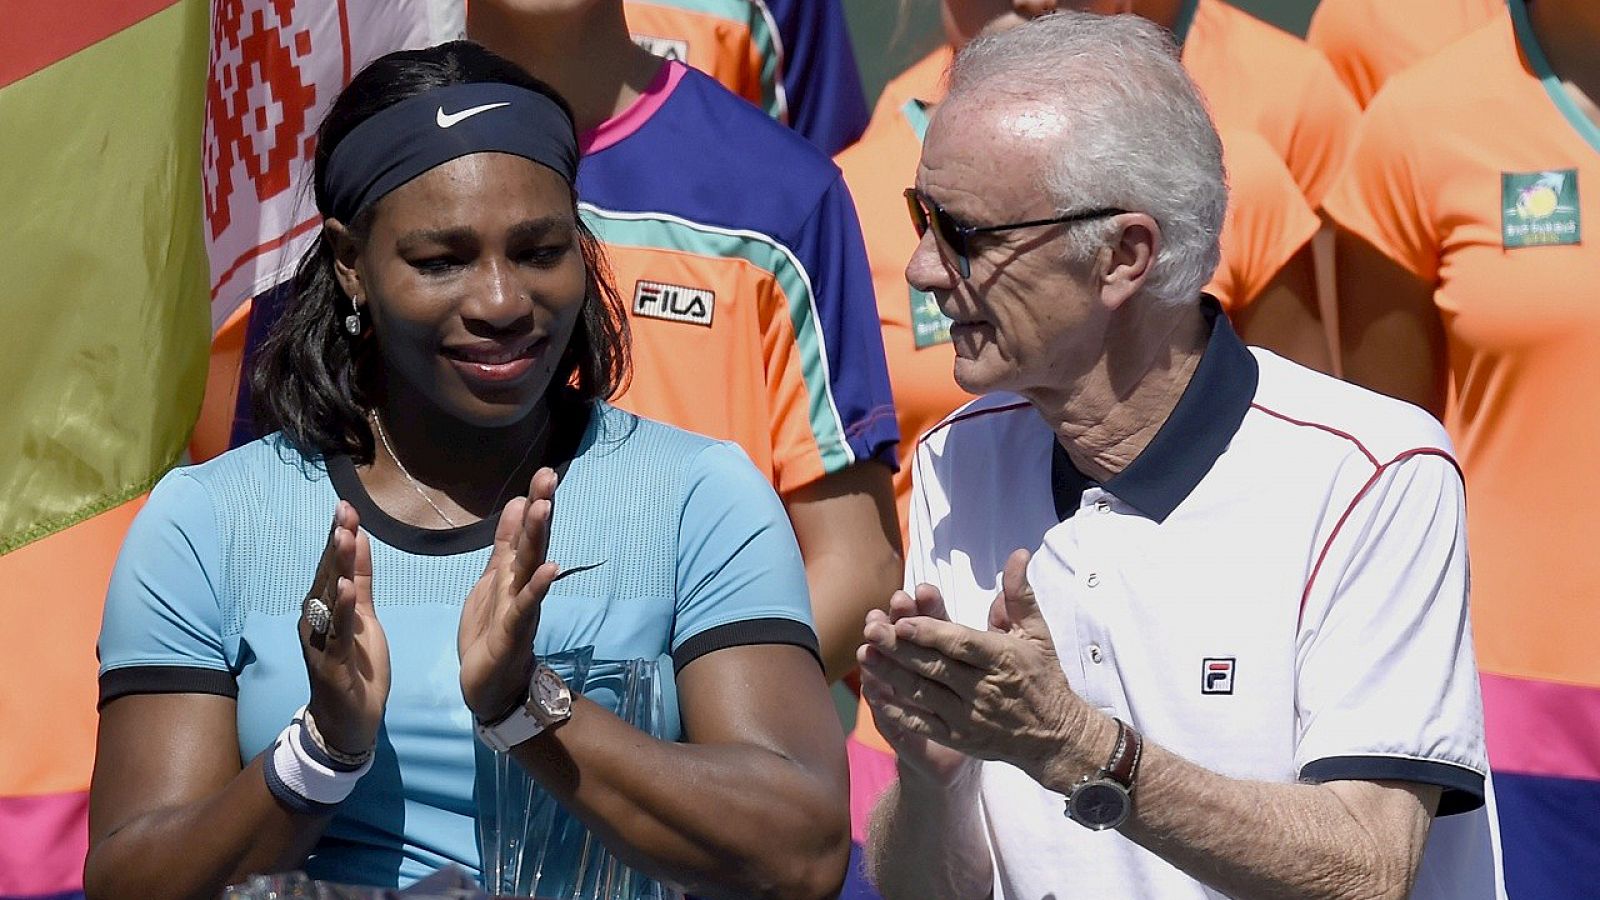 La tenista Serena Williams con el director del torneo de Indian Wells, Raymond Moore, durante la ceremonia de entrega de trofeos, el 20 de marzo de 2016, California, EE.UU. EFE/EPA/DANIEL MURPHY